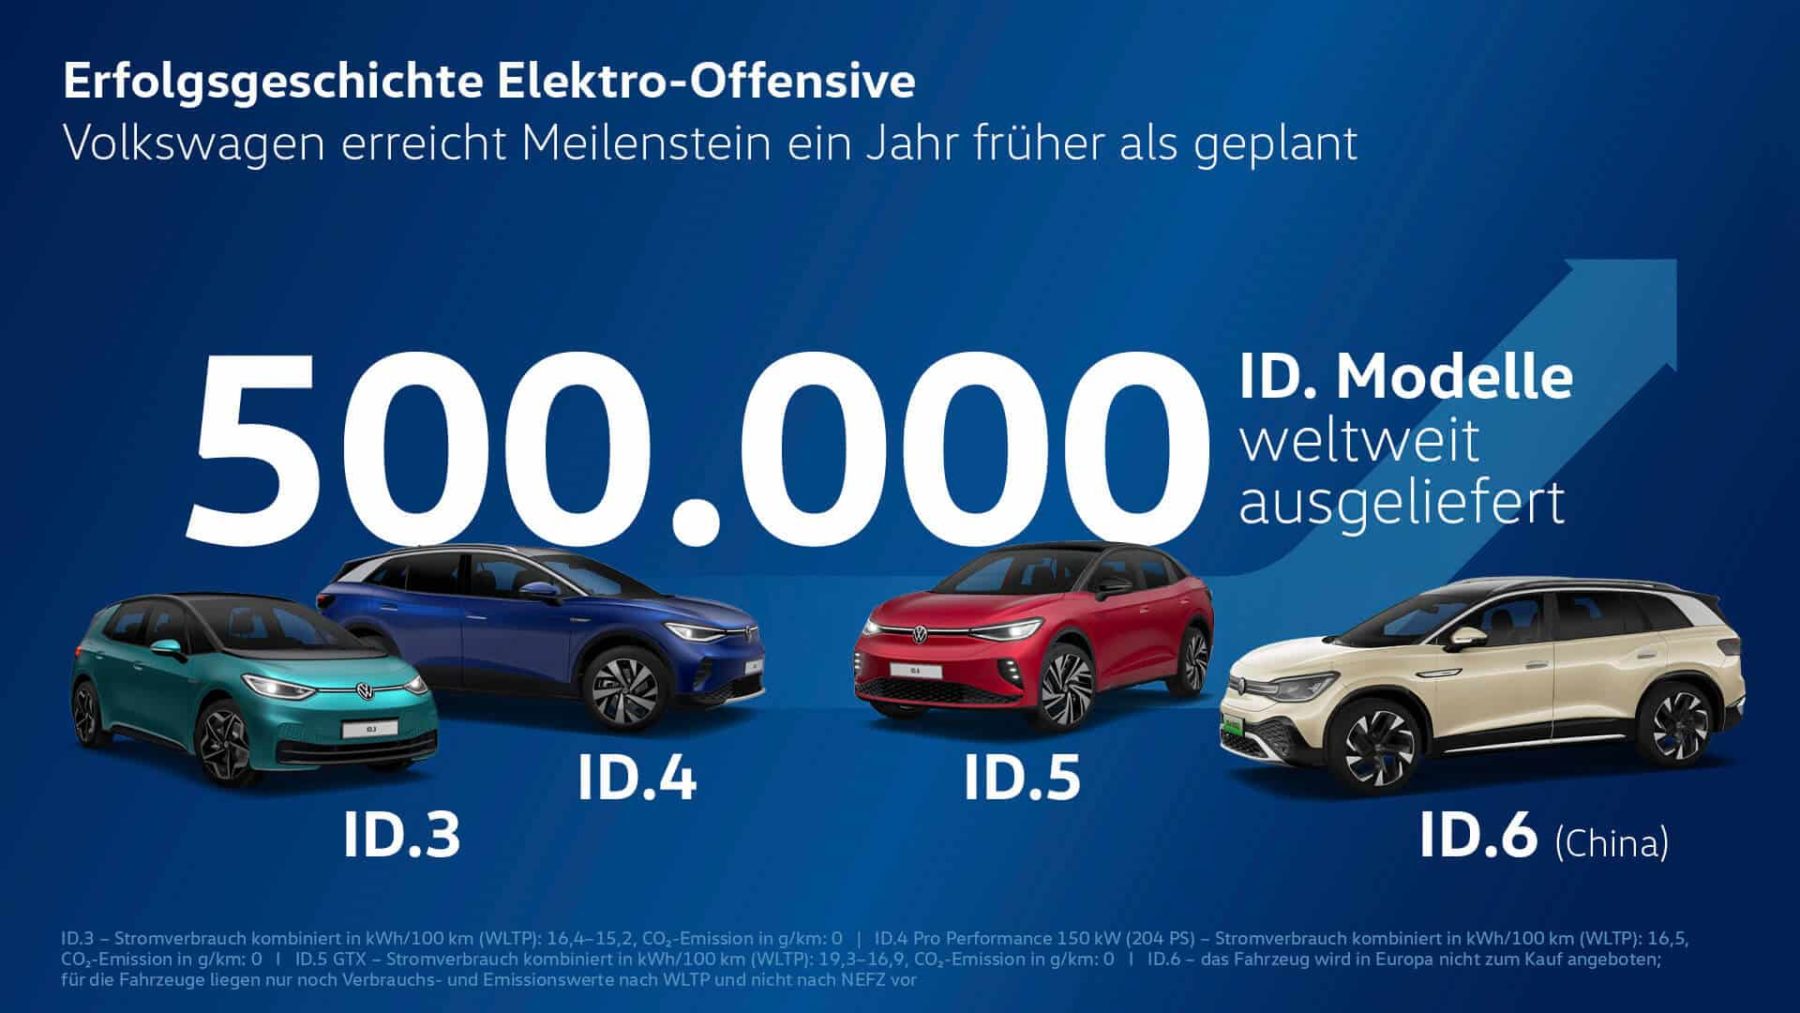 Meilenstein: Volkswagen liefert 500.000 ID.-Modelle weltweit aus